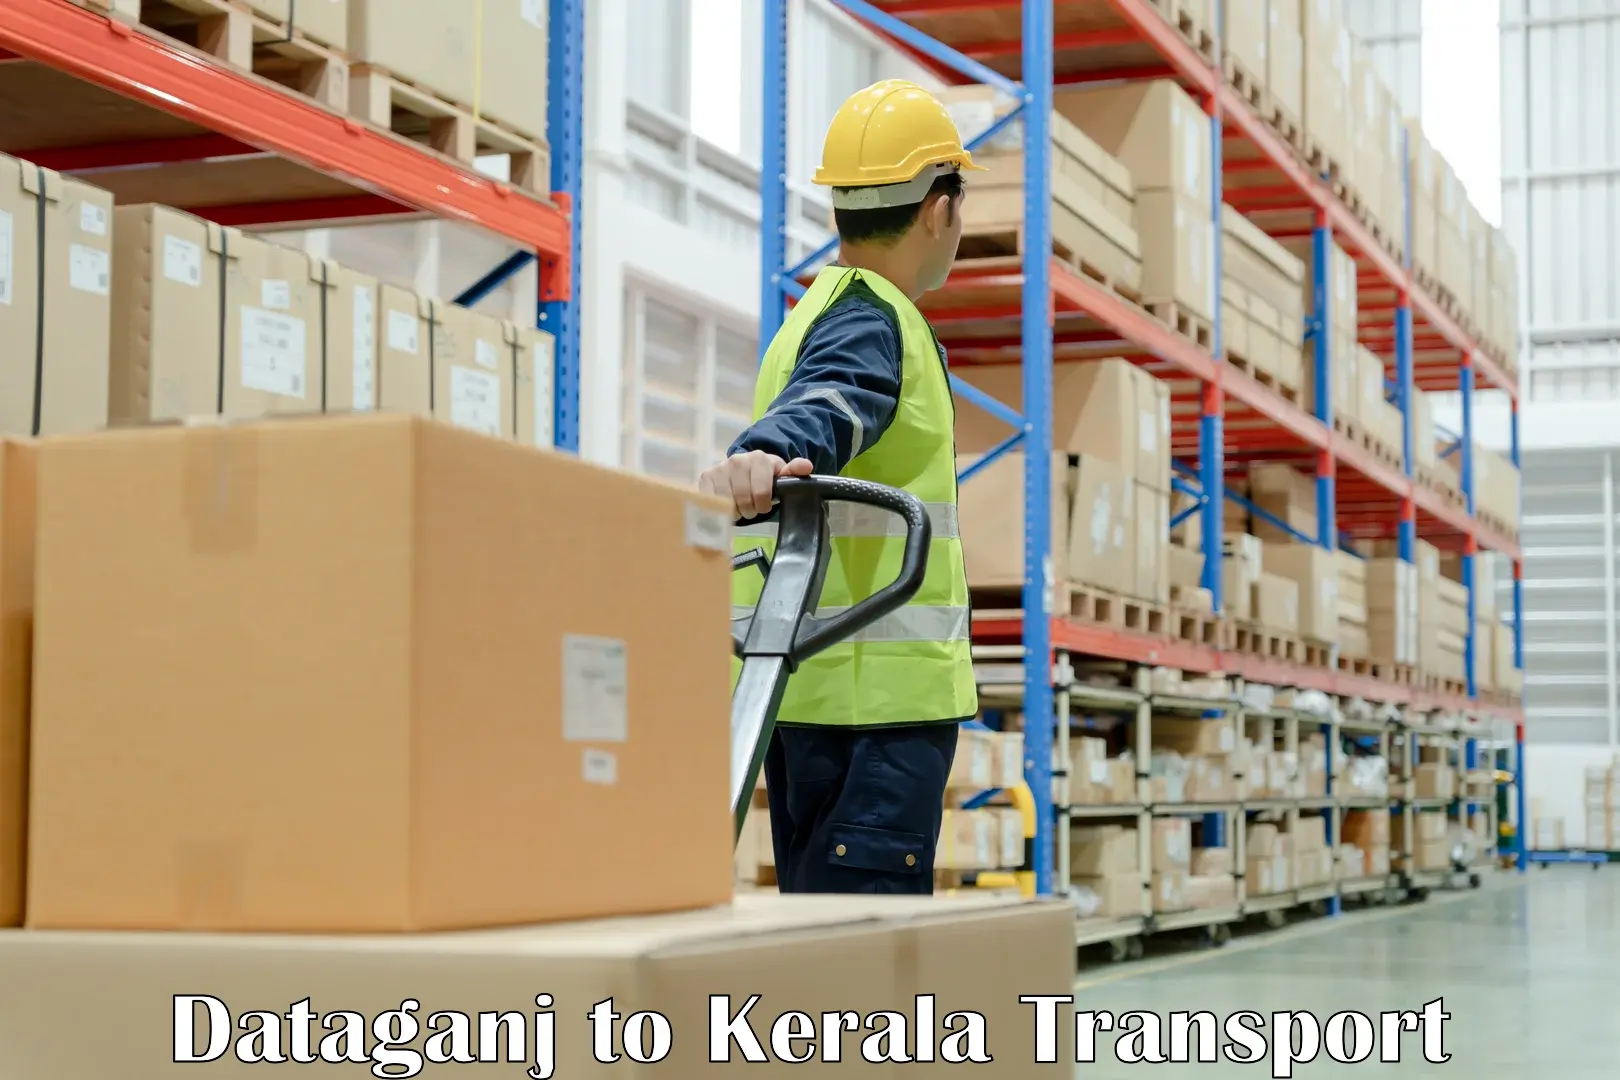 India truck logistics services Dataganj to Kakkur